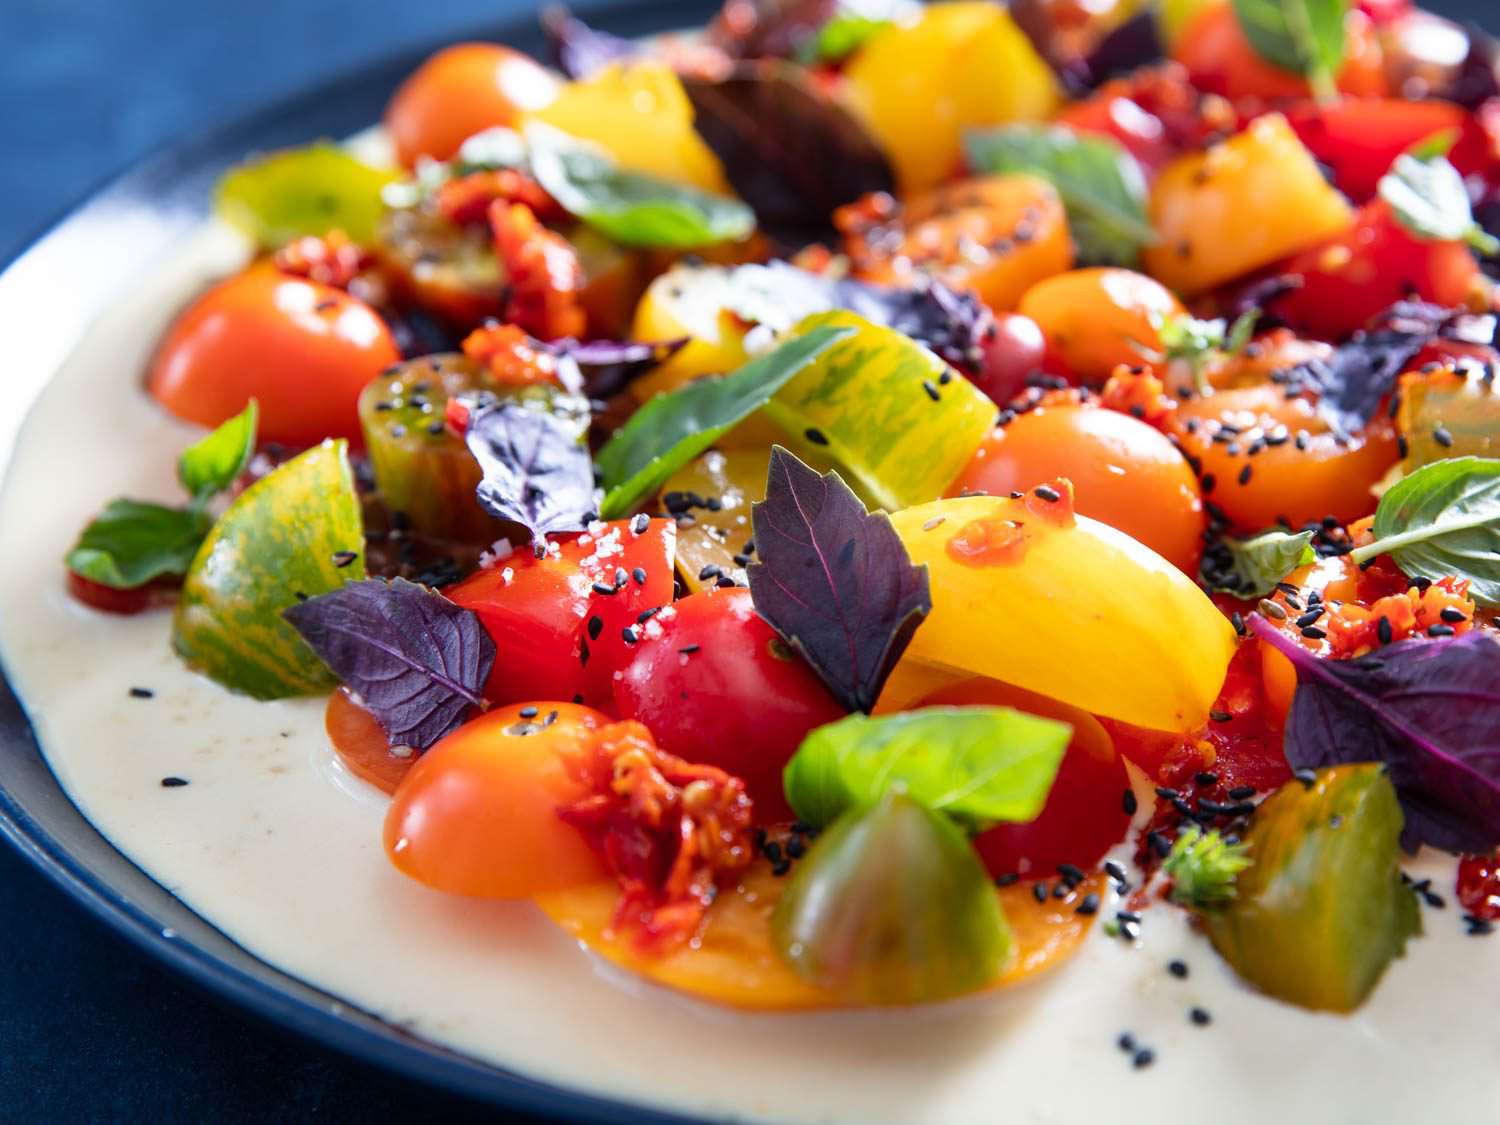 蕃茄沙拉的近景侧面与汤茄酱，绿色和紫色罗勒，卡拉布里亚辣椒，和黑芝麻种子。